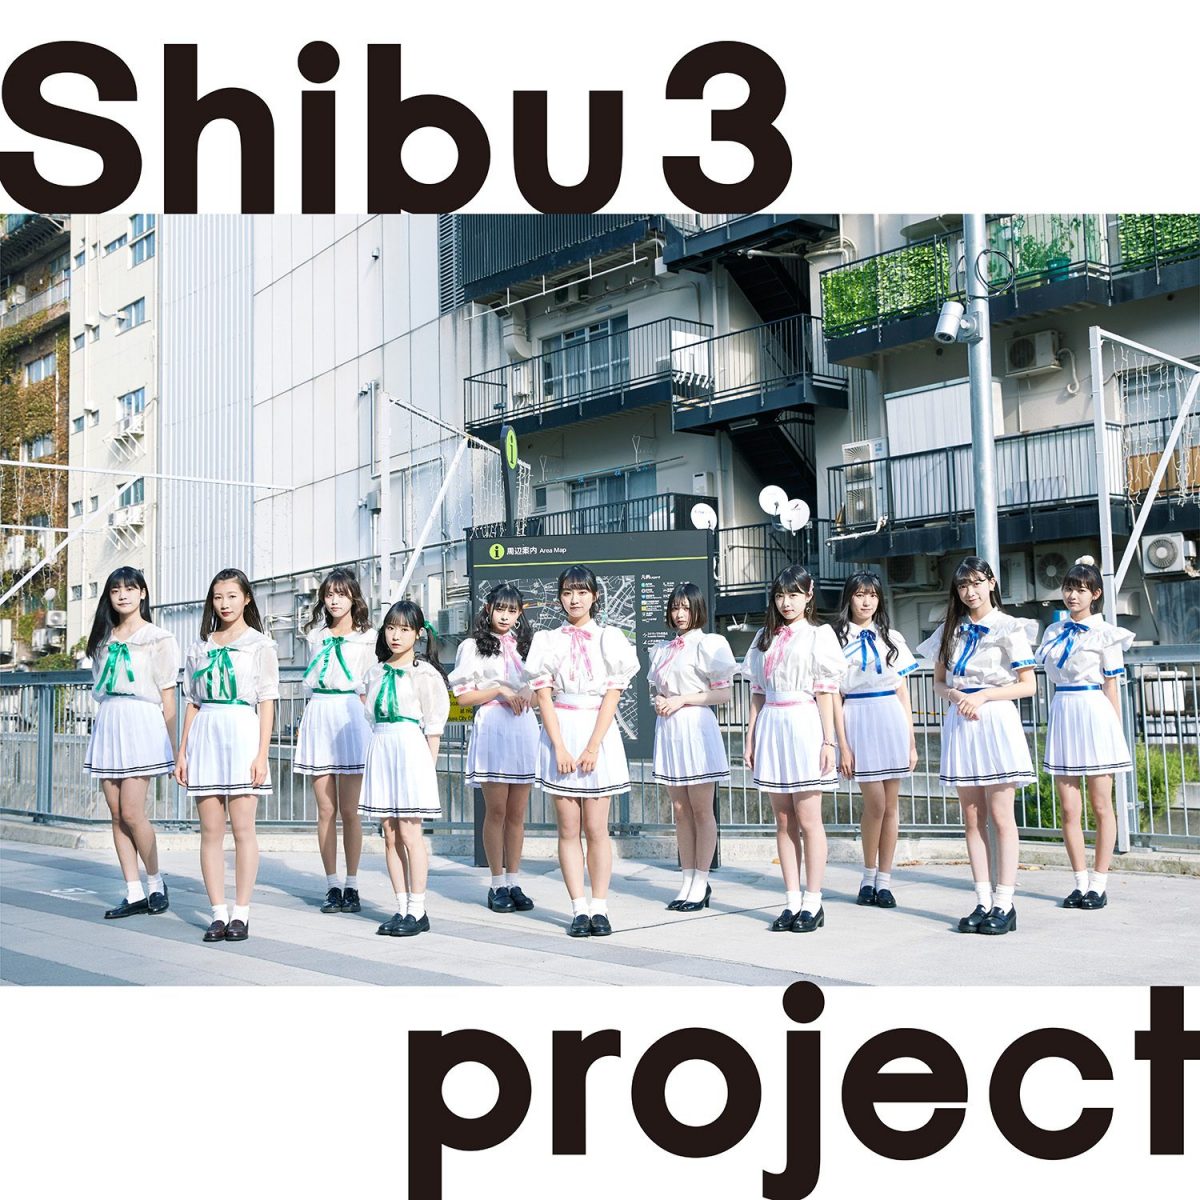 Shibu3 project